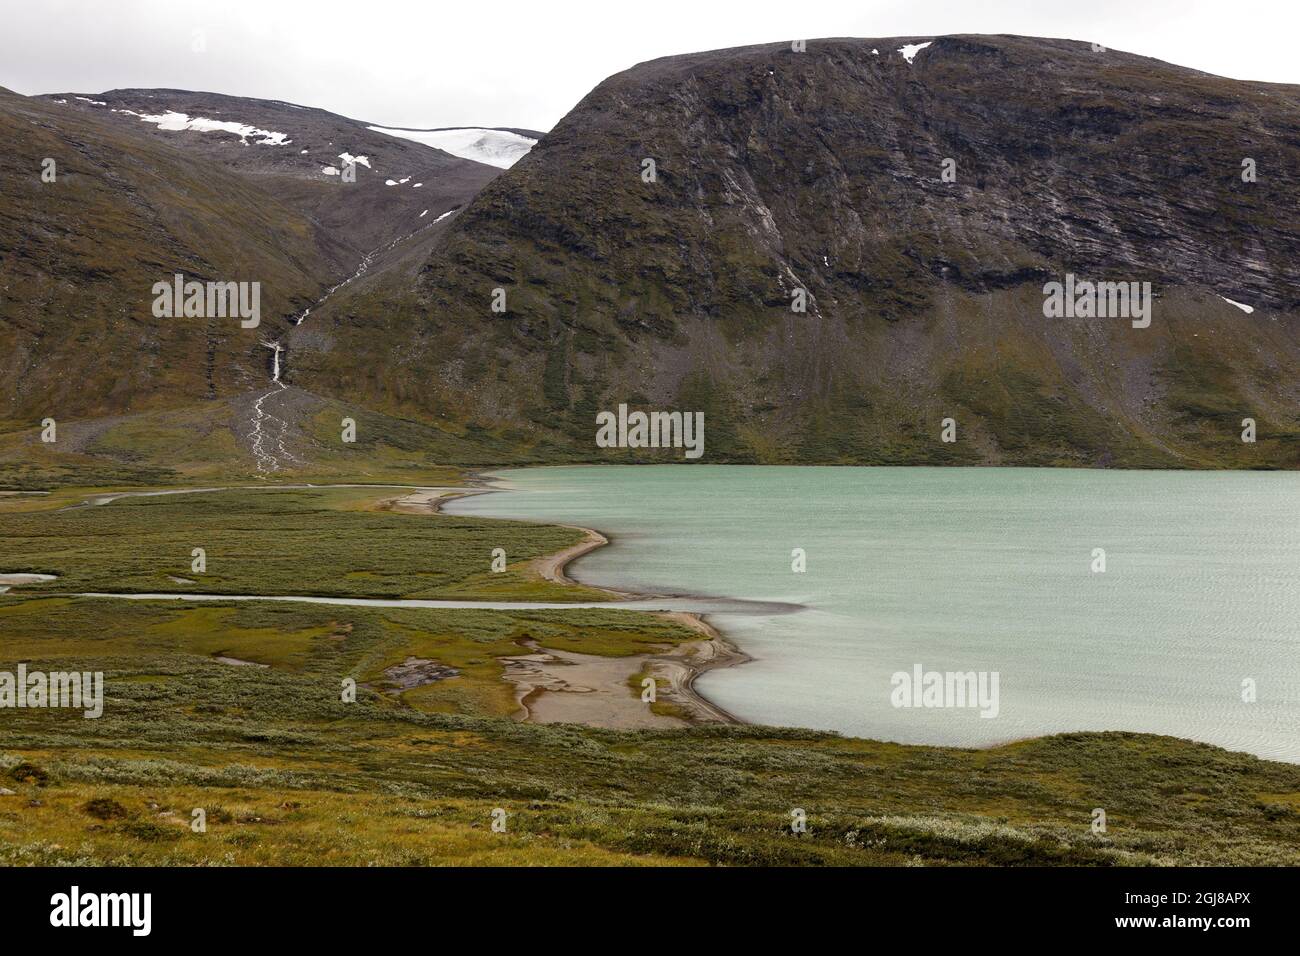 SAREK 2011-08-08 Lago Alkajaure Situado en el Parque Nacional Sarek en el valle del estuario occidental de Alkavagges. El Parque Nacional Sarek está situado en la zona de Lafonia, la región del Círculo Polar Ártico, al norte de Suecia. Laponian en Laponia sueca es el paisaje natural continuo más grande de Europa con naturaleza virtualmente virgen y es la mayor área del mundo (y una de las últimas) con una forma de vida ancestral basada en el movimiento estacional del ganado. Laponian es o la Lista del Patrimonio Mundial de la UNESCO *** Sjon Alkajaure ligger i Sarek vid dalen Alkavagges vastra mynning. Foto Henrik von Klopp / SCANPIX Kod Foto de stock